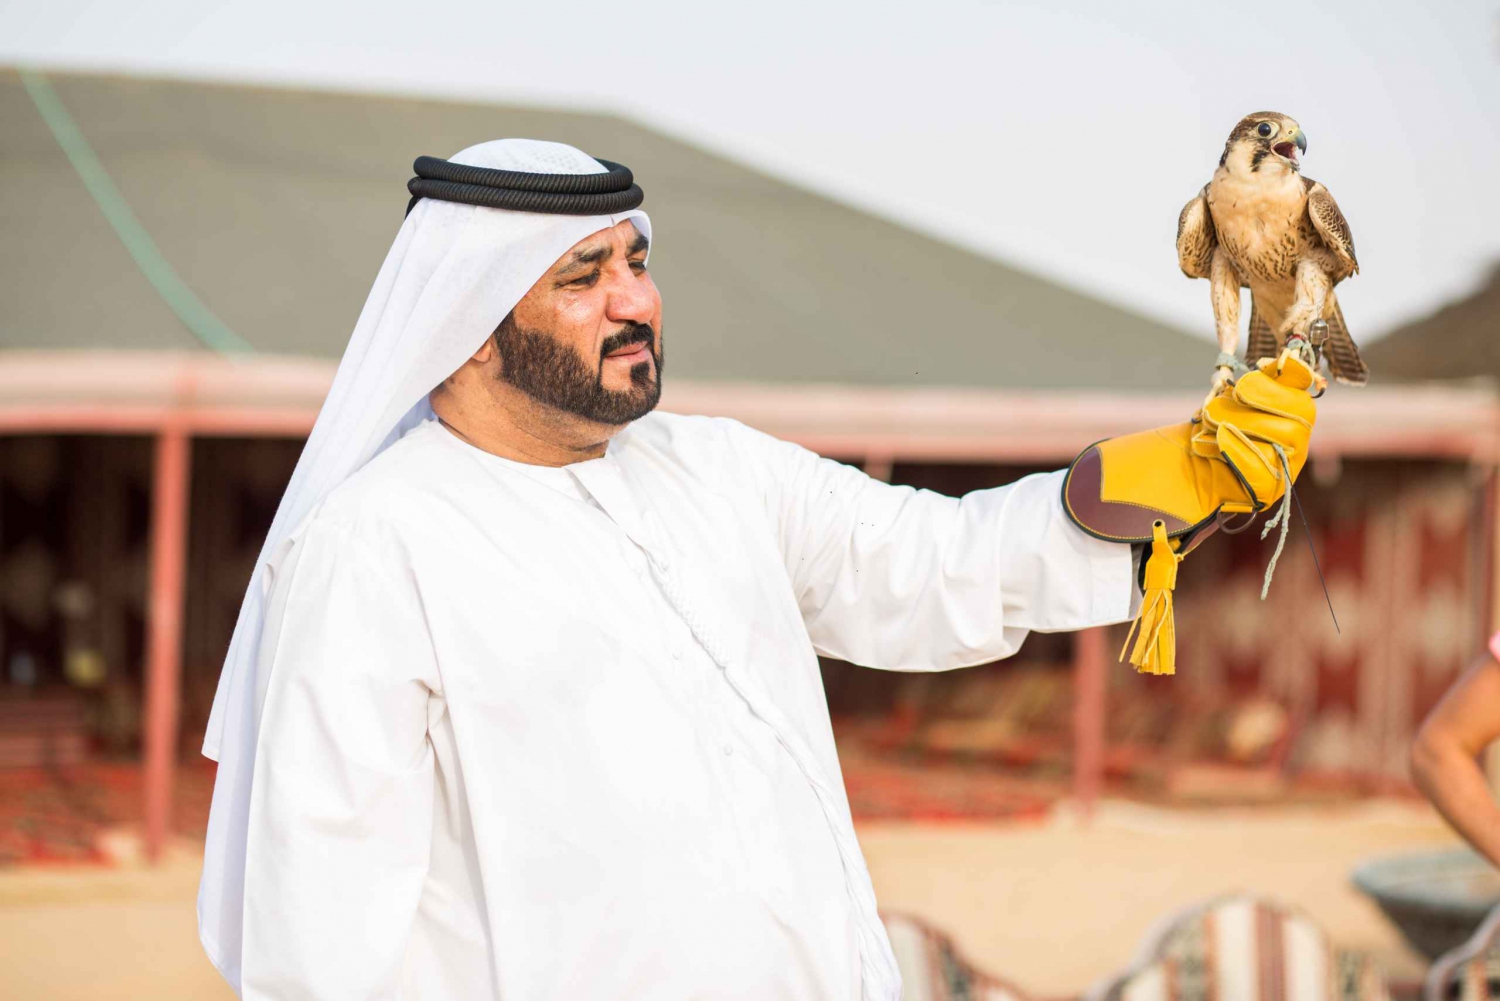 Dubai: Hot Air Balloon, Desert Safari, Quad Biking, and More